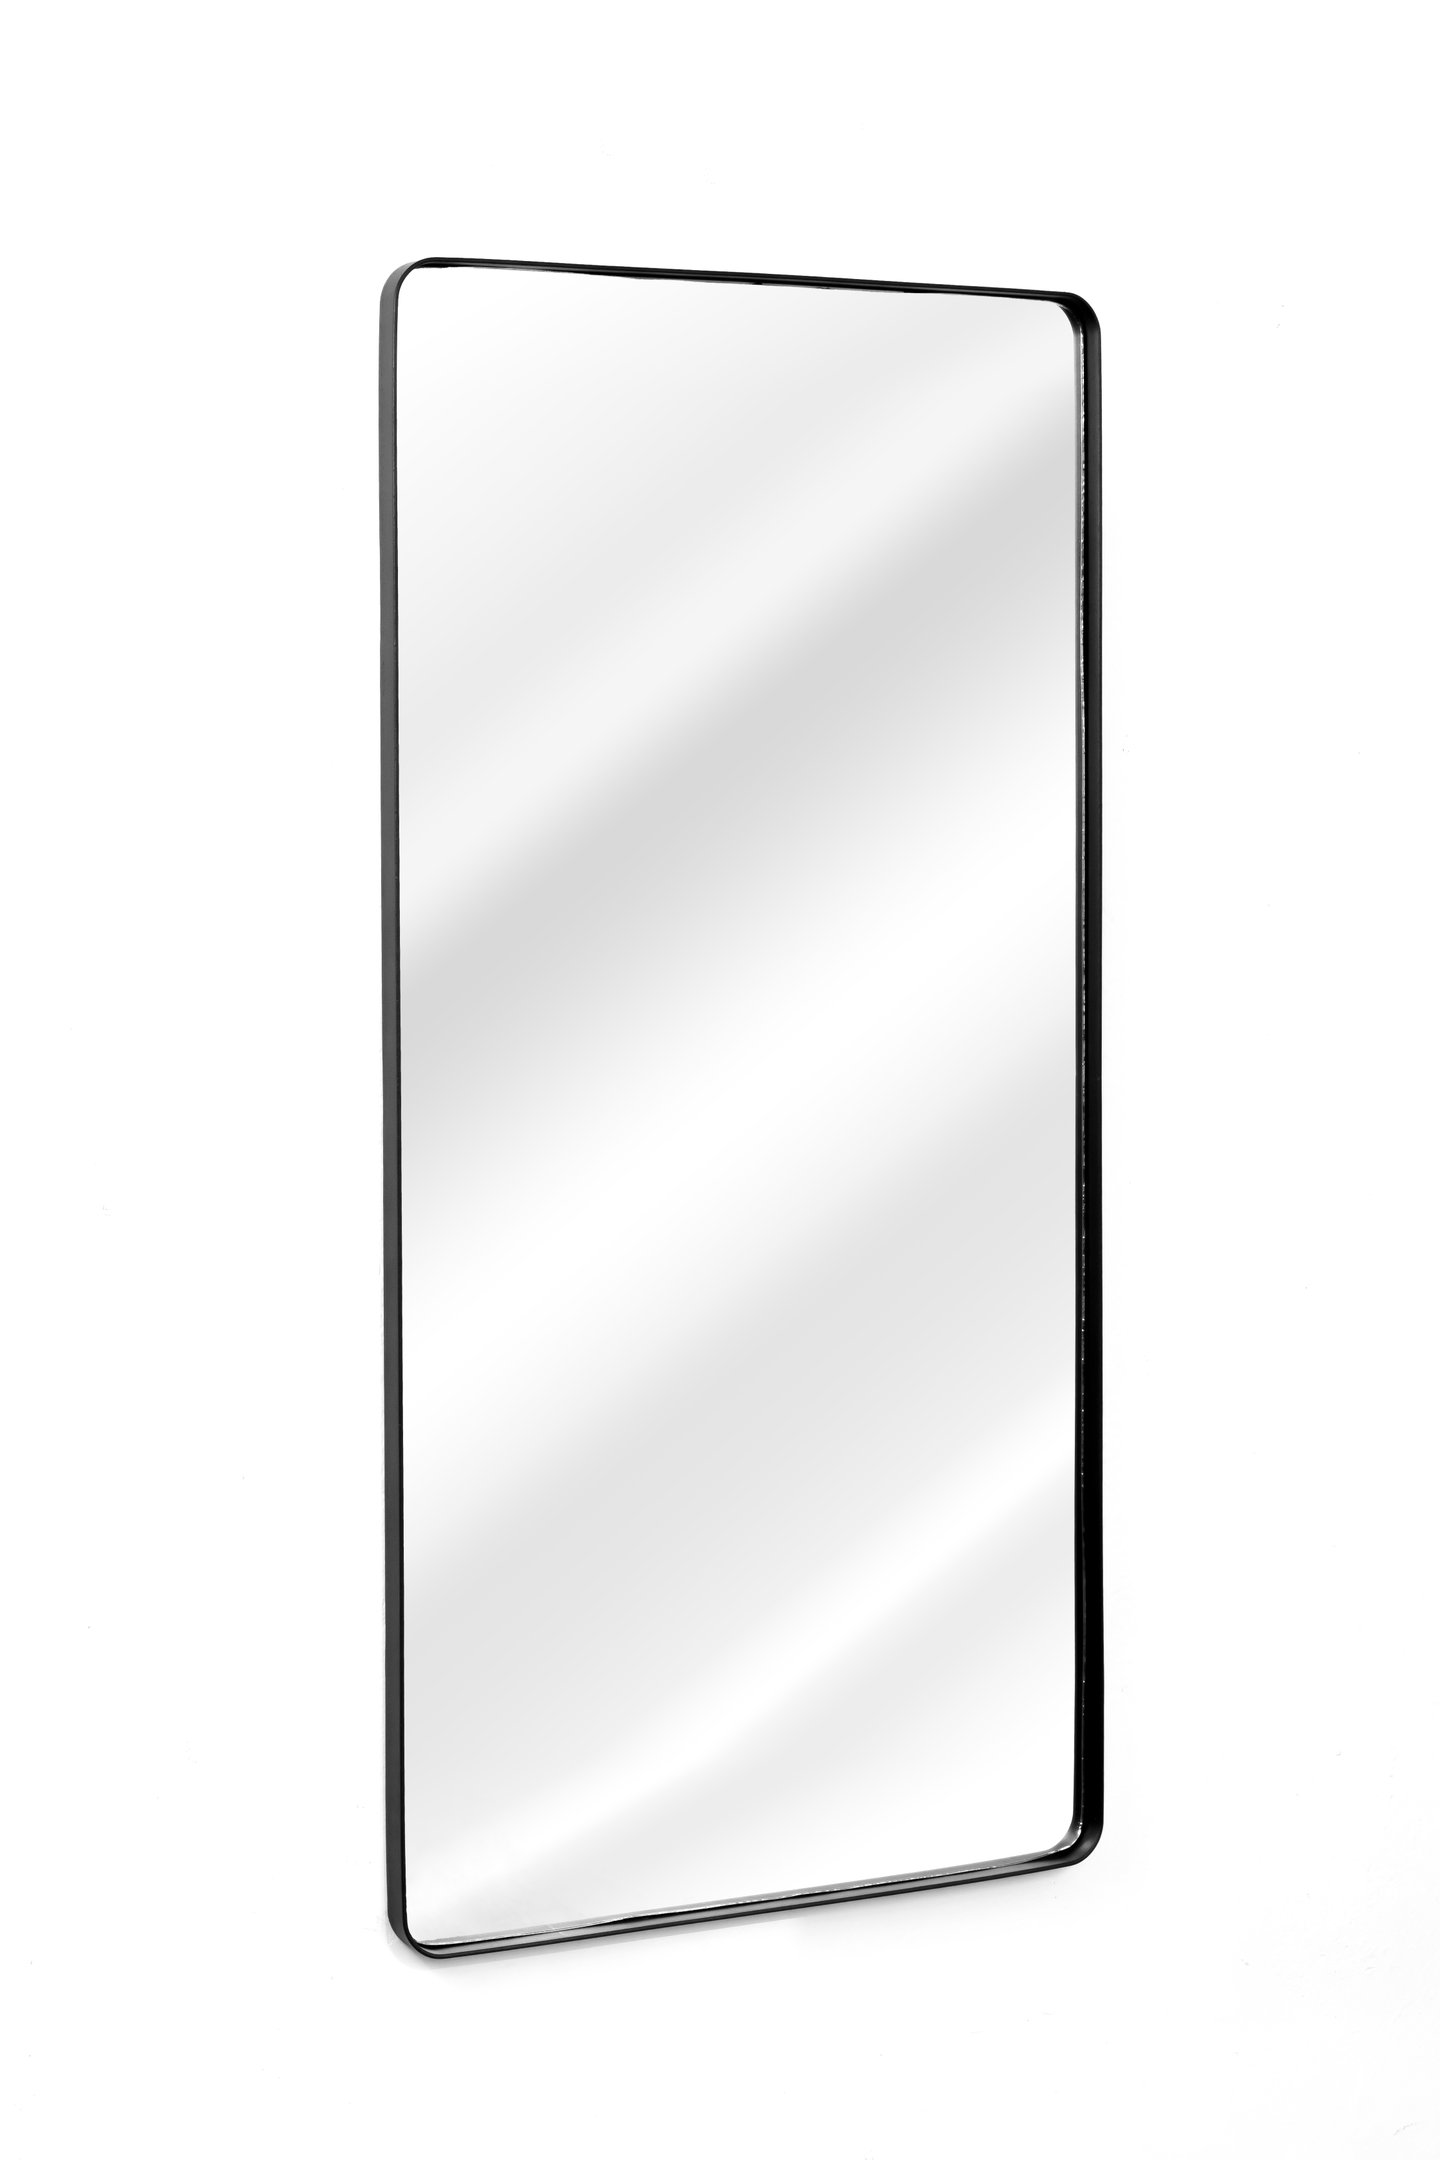 Espelho Retangular Moldura Banheiro Quarto Sala 120x60 Cores:Preto - 2